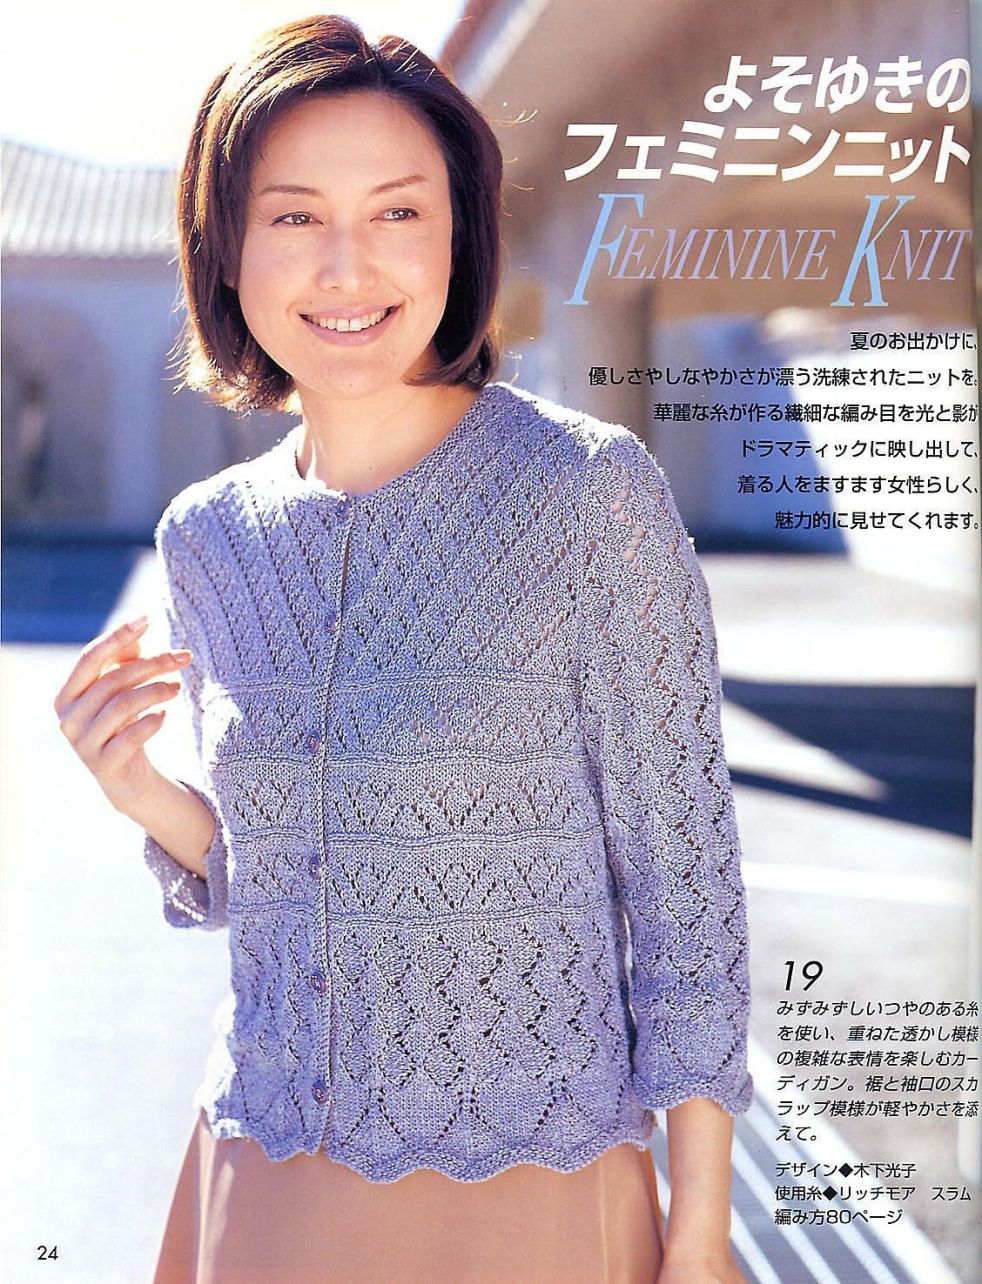 Beautiful light blue cardigan knitting pattern